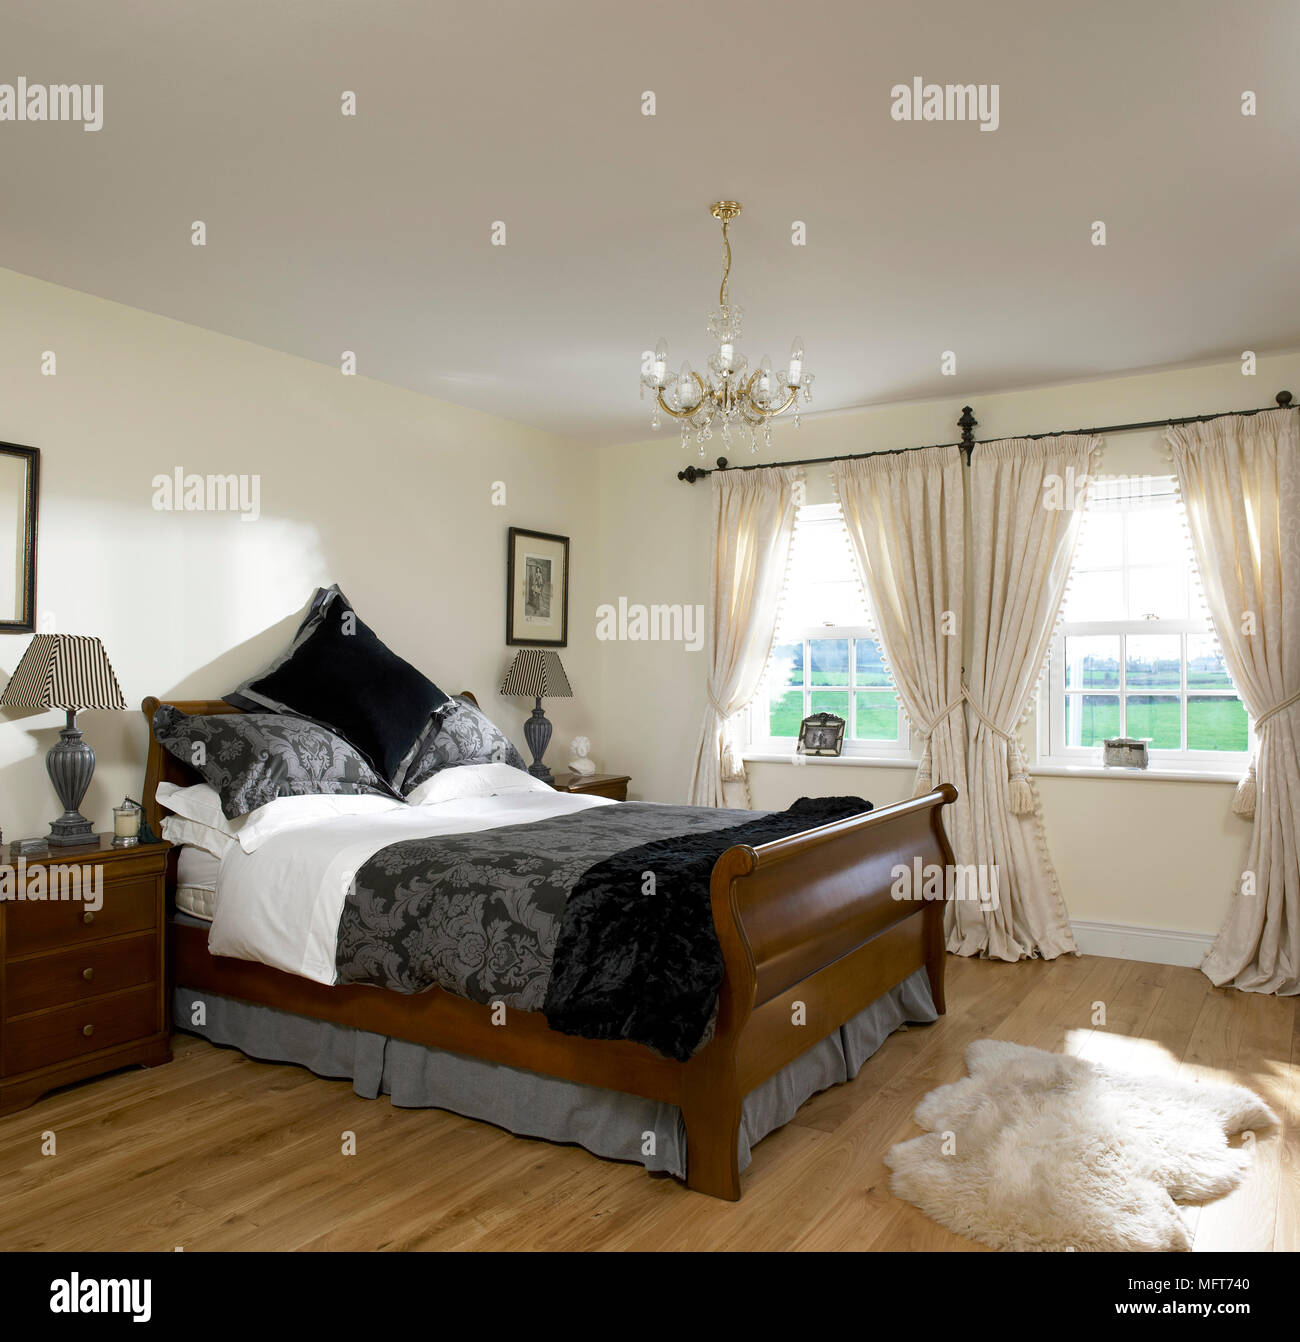 Une chambre, sol neutre traditionnel lit bateau, double couverture de peau  de mouton, rideaux, table de chevet, lampe, lustre, photo, plancher en bois  Photo Stock - Alamy